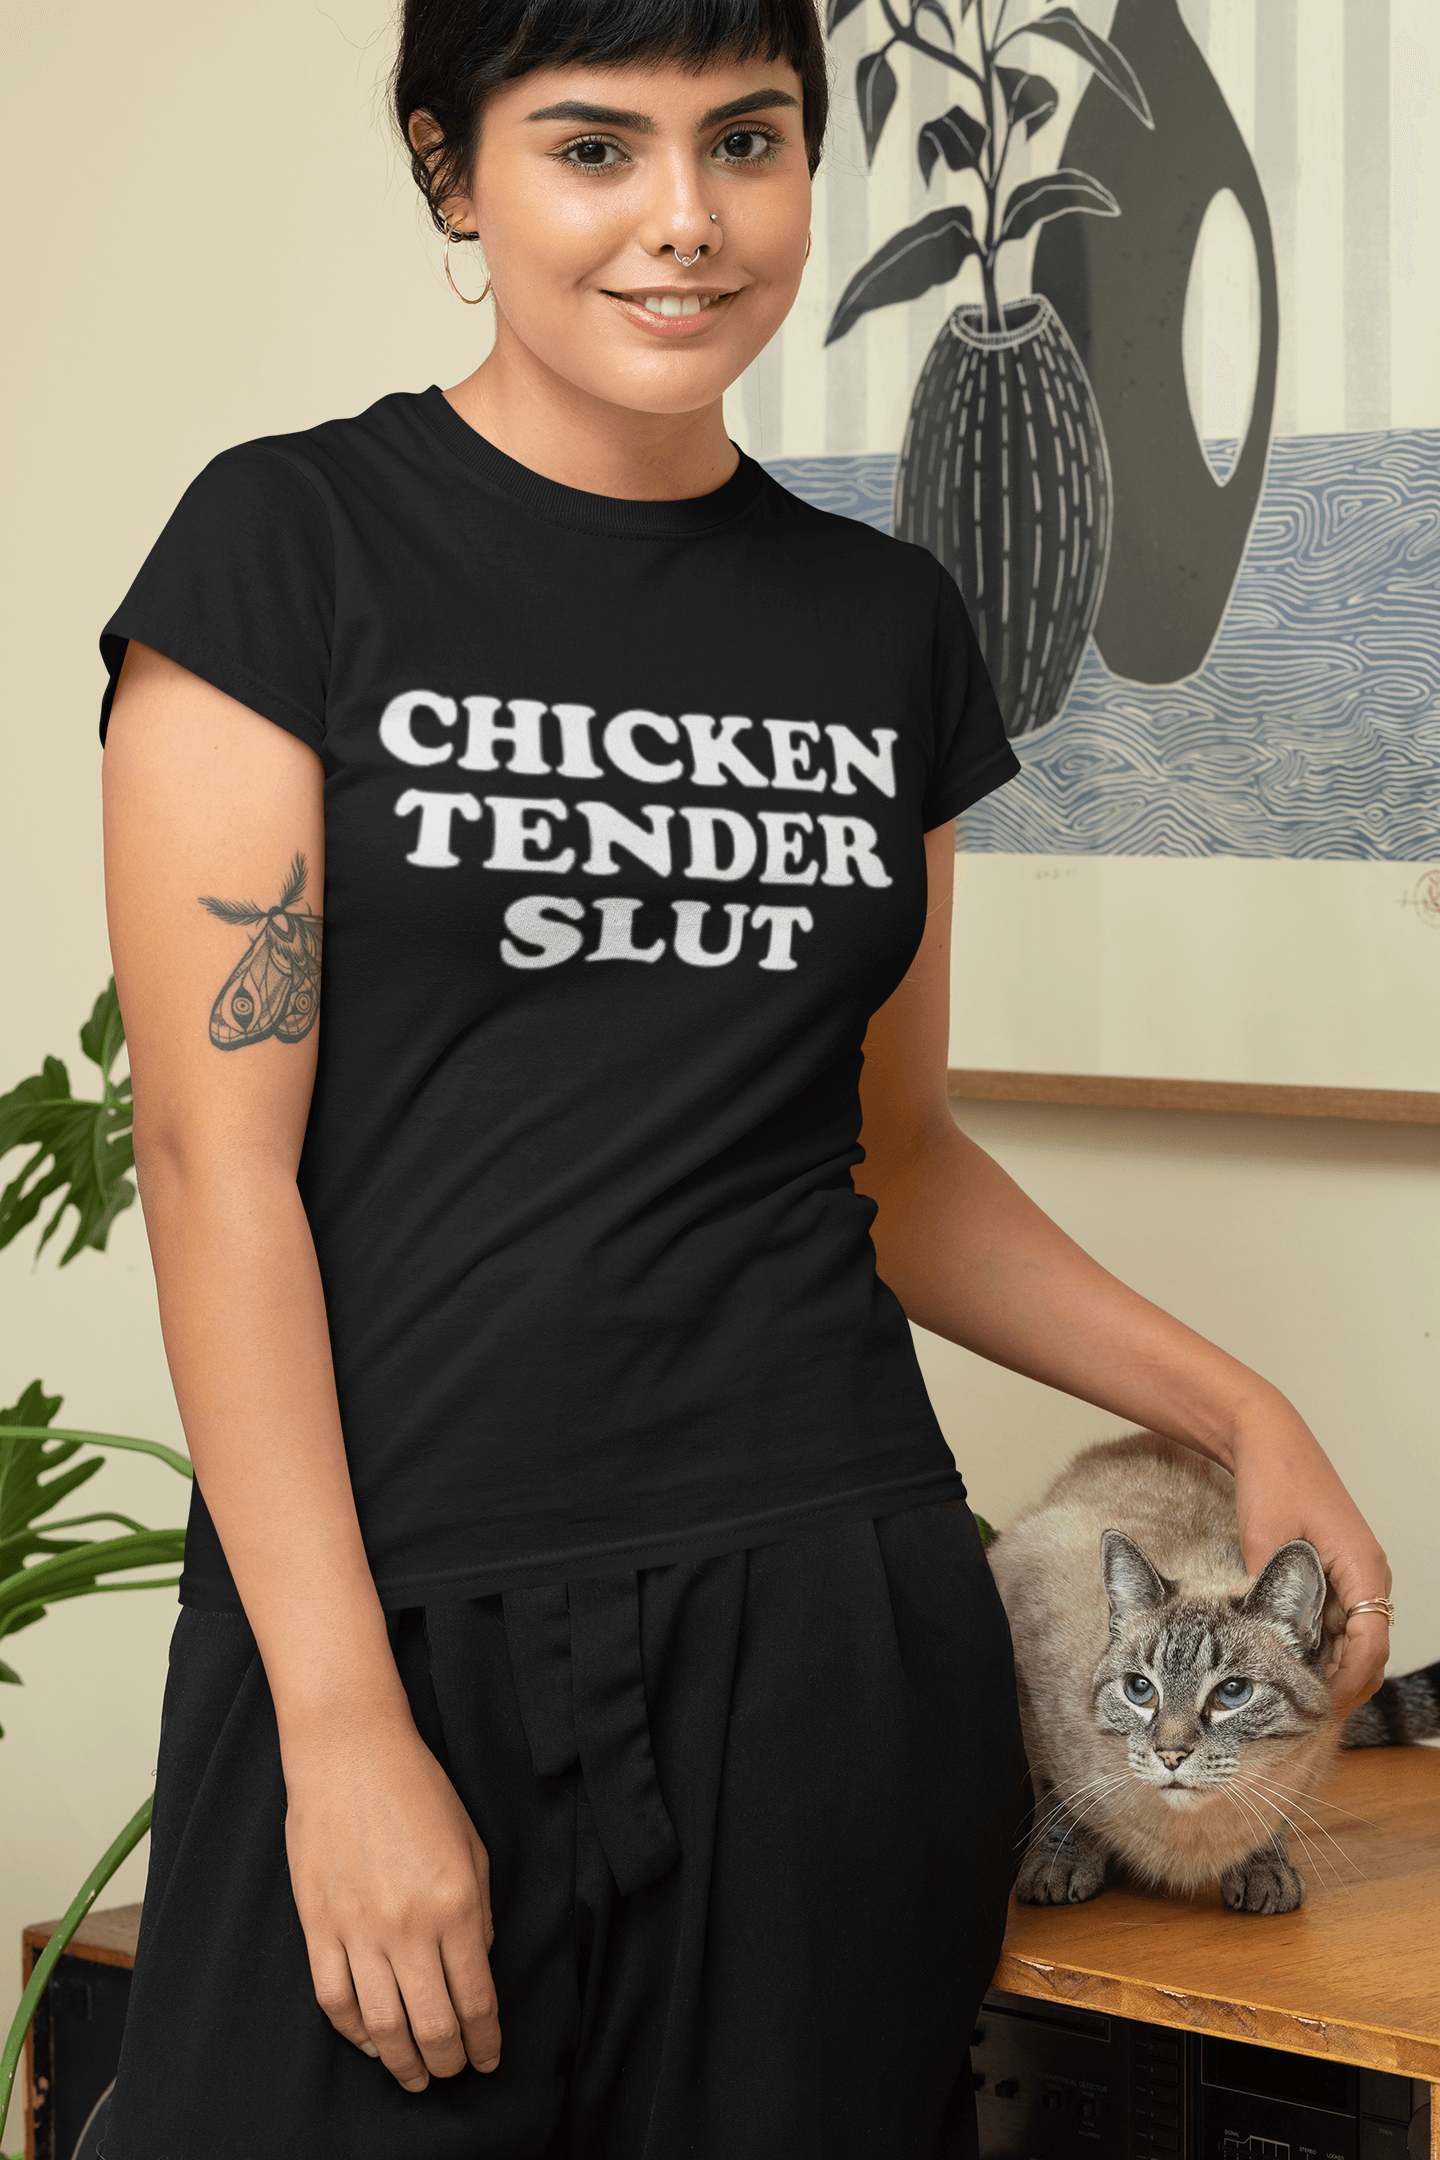 Cotton T-shirt Tender Chicken Slut Short Sleeve Ultra Soft Unisex Crewneck Top - TopKoalaTee